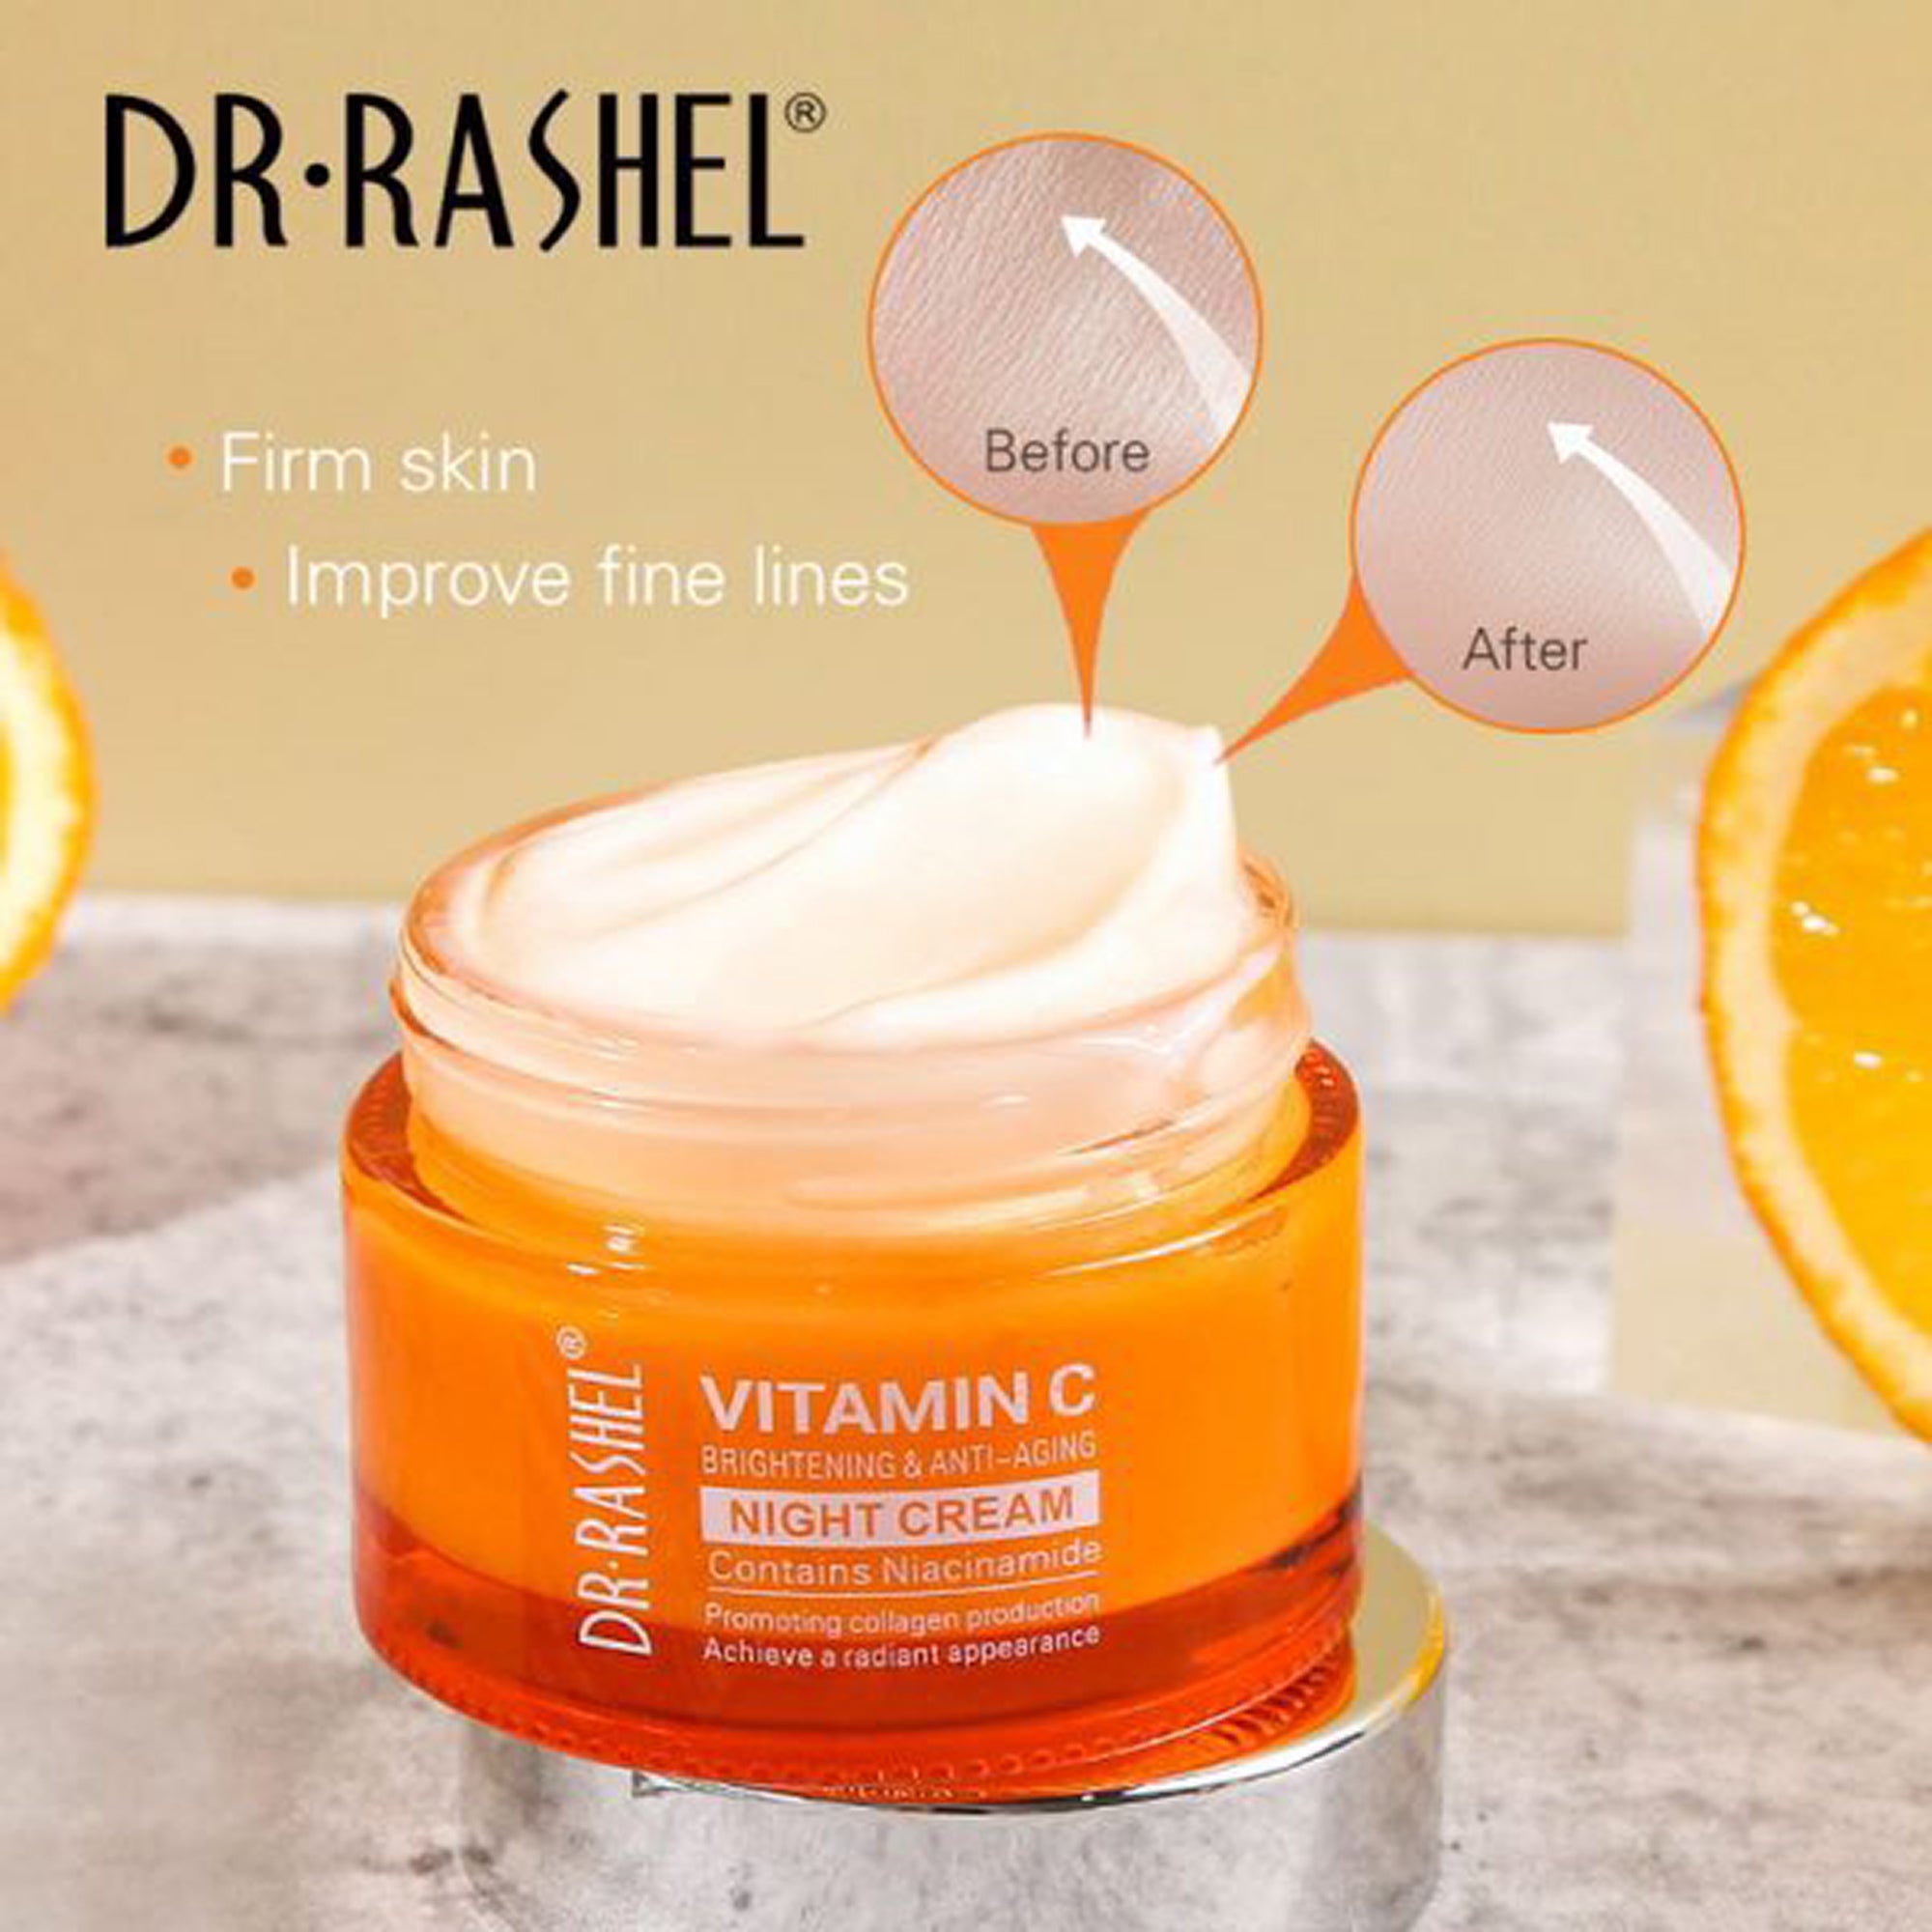 Dr-Rashel Vitamin C Anti-Aging and Brightening Night Cream